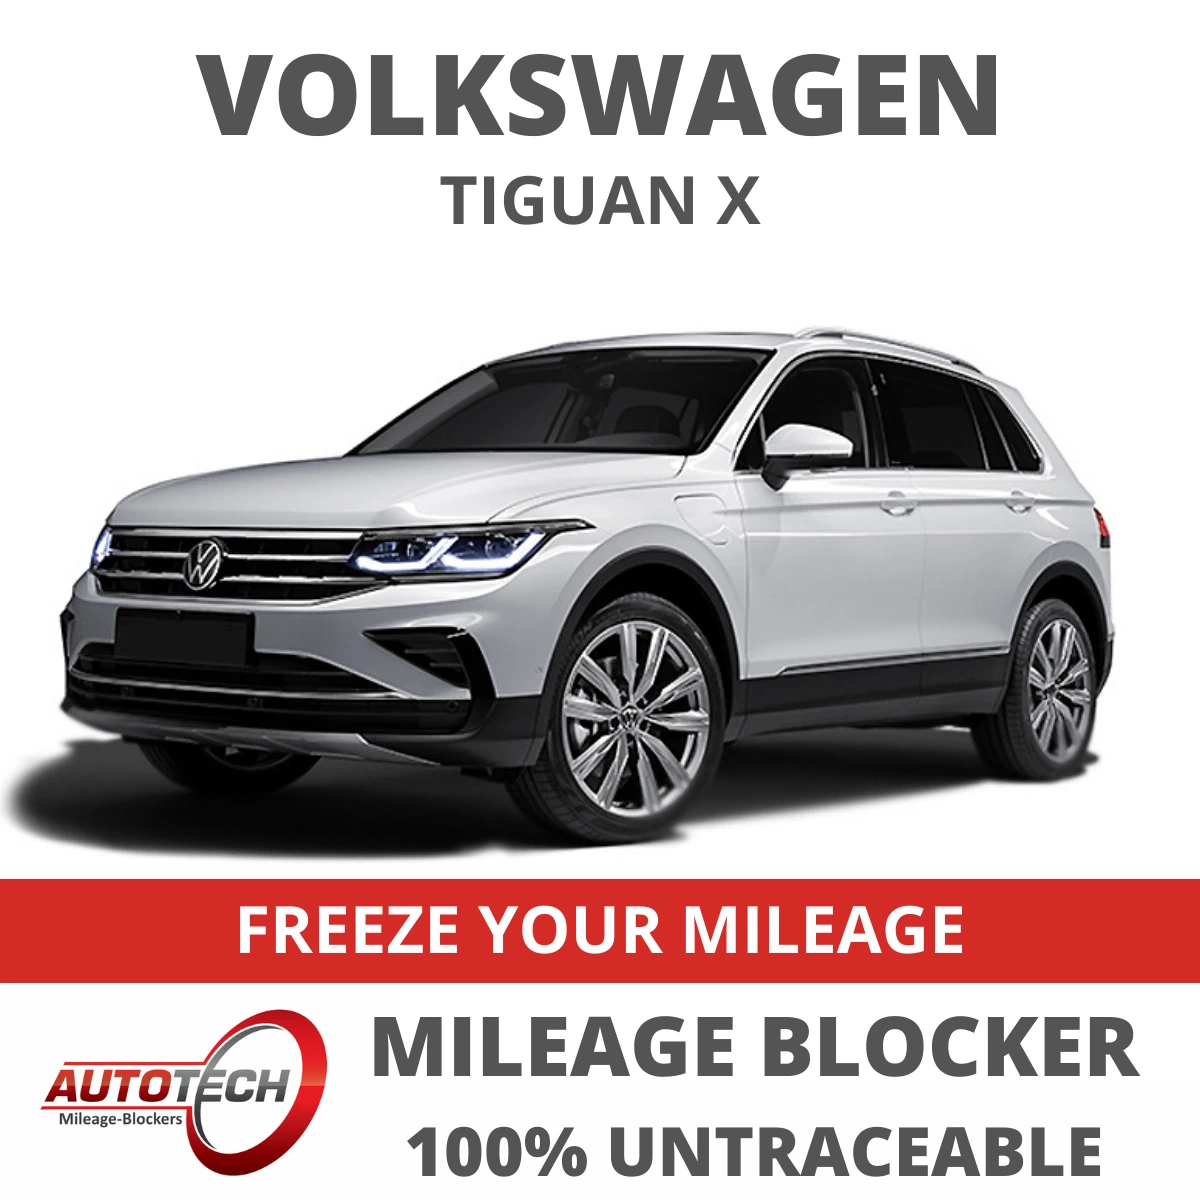 Volkswagen Tiguan X Mileage Blocker 2020 - 2023 - Autotech UK